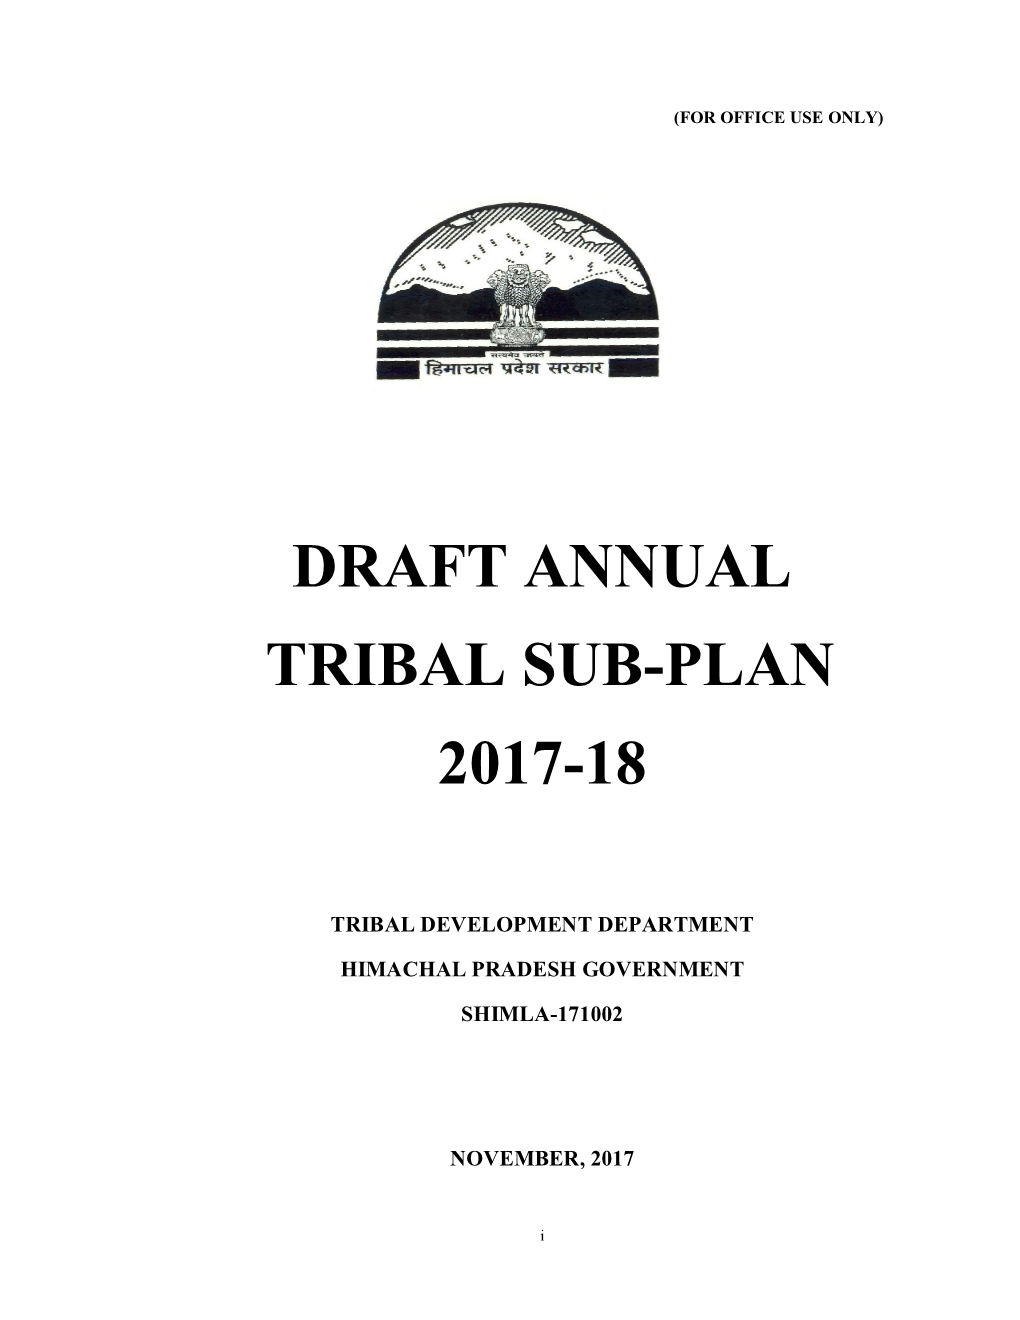 Draft Annual Tribal Sub-Plan 2017-18